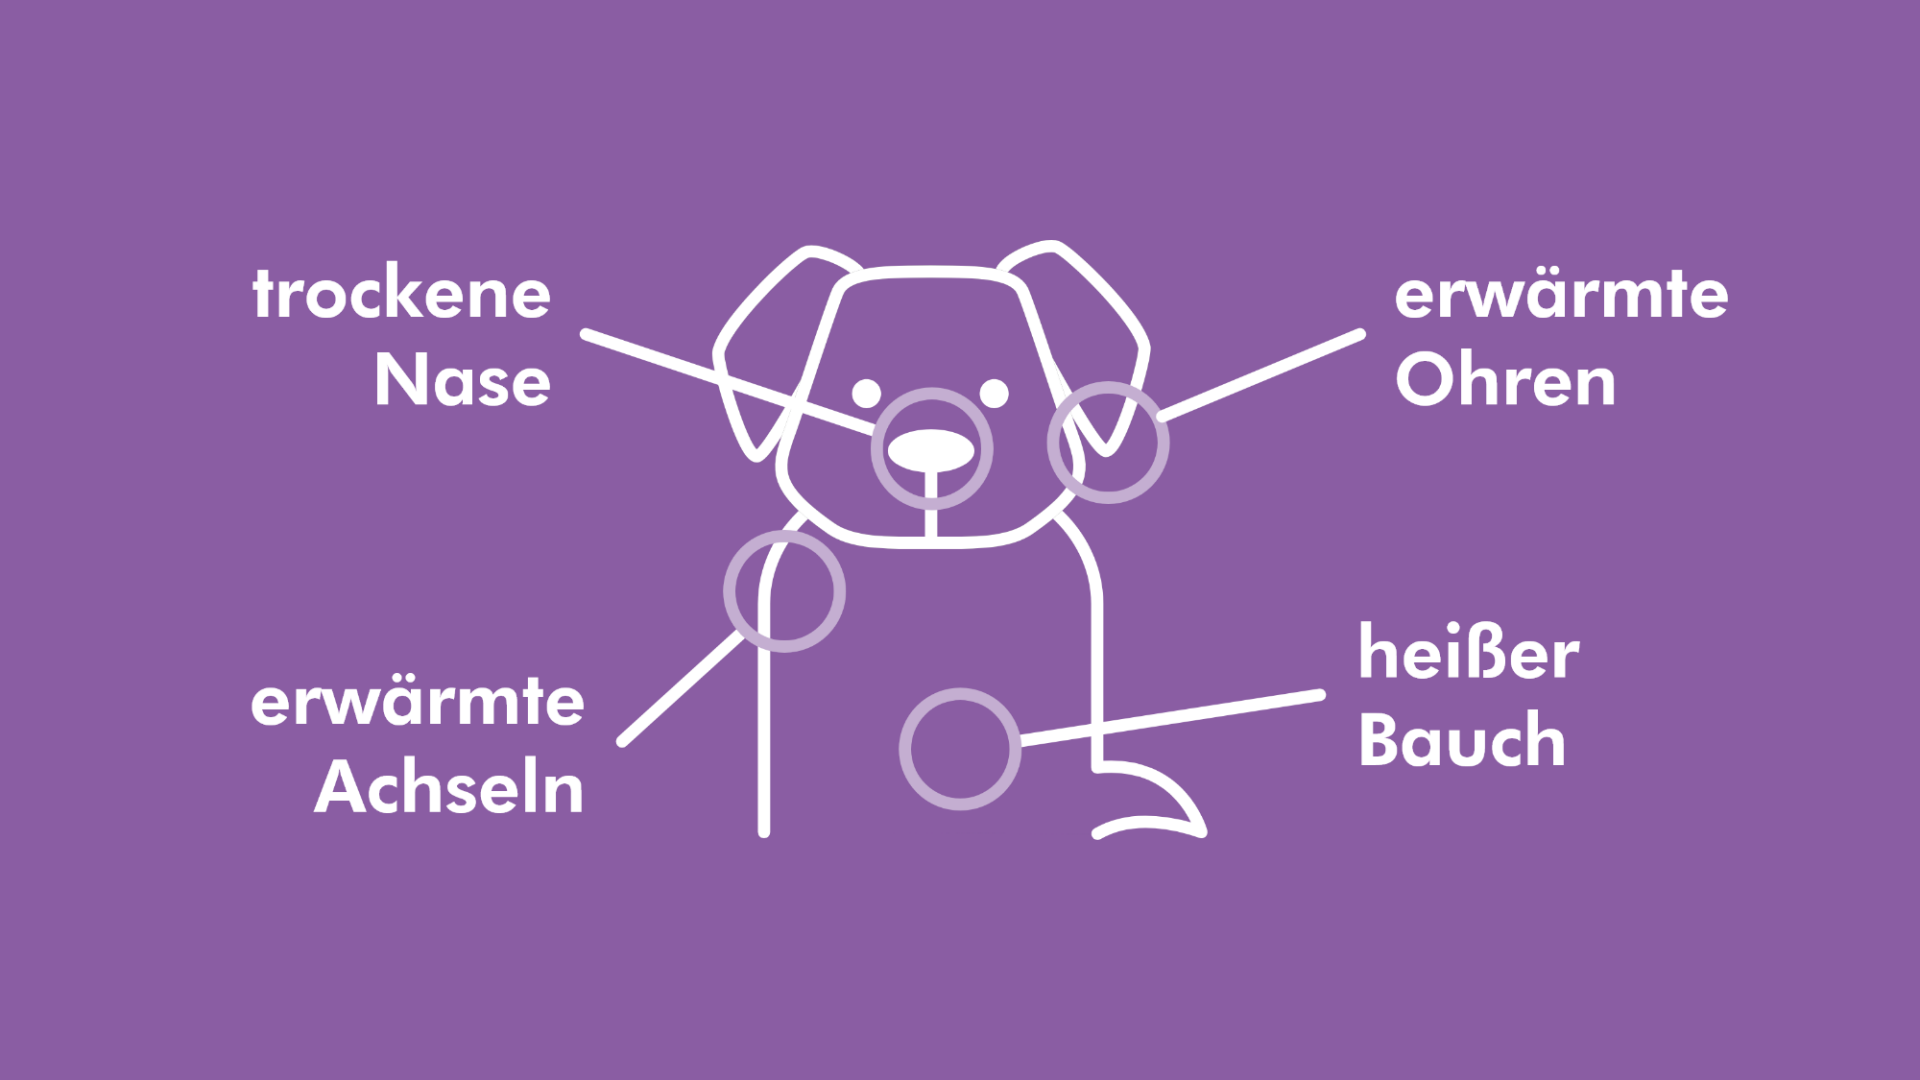 Auf dieser Grafik ist ein Hund abgebildet. Alle Körperstellen, an denen Symptome von Fieber auftreten können, sind umkreist. 